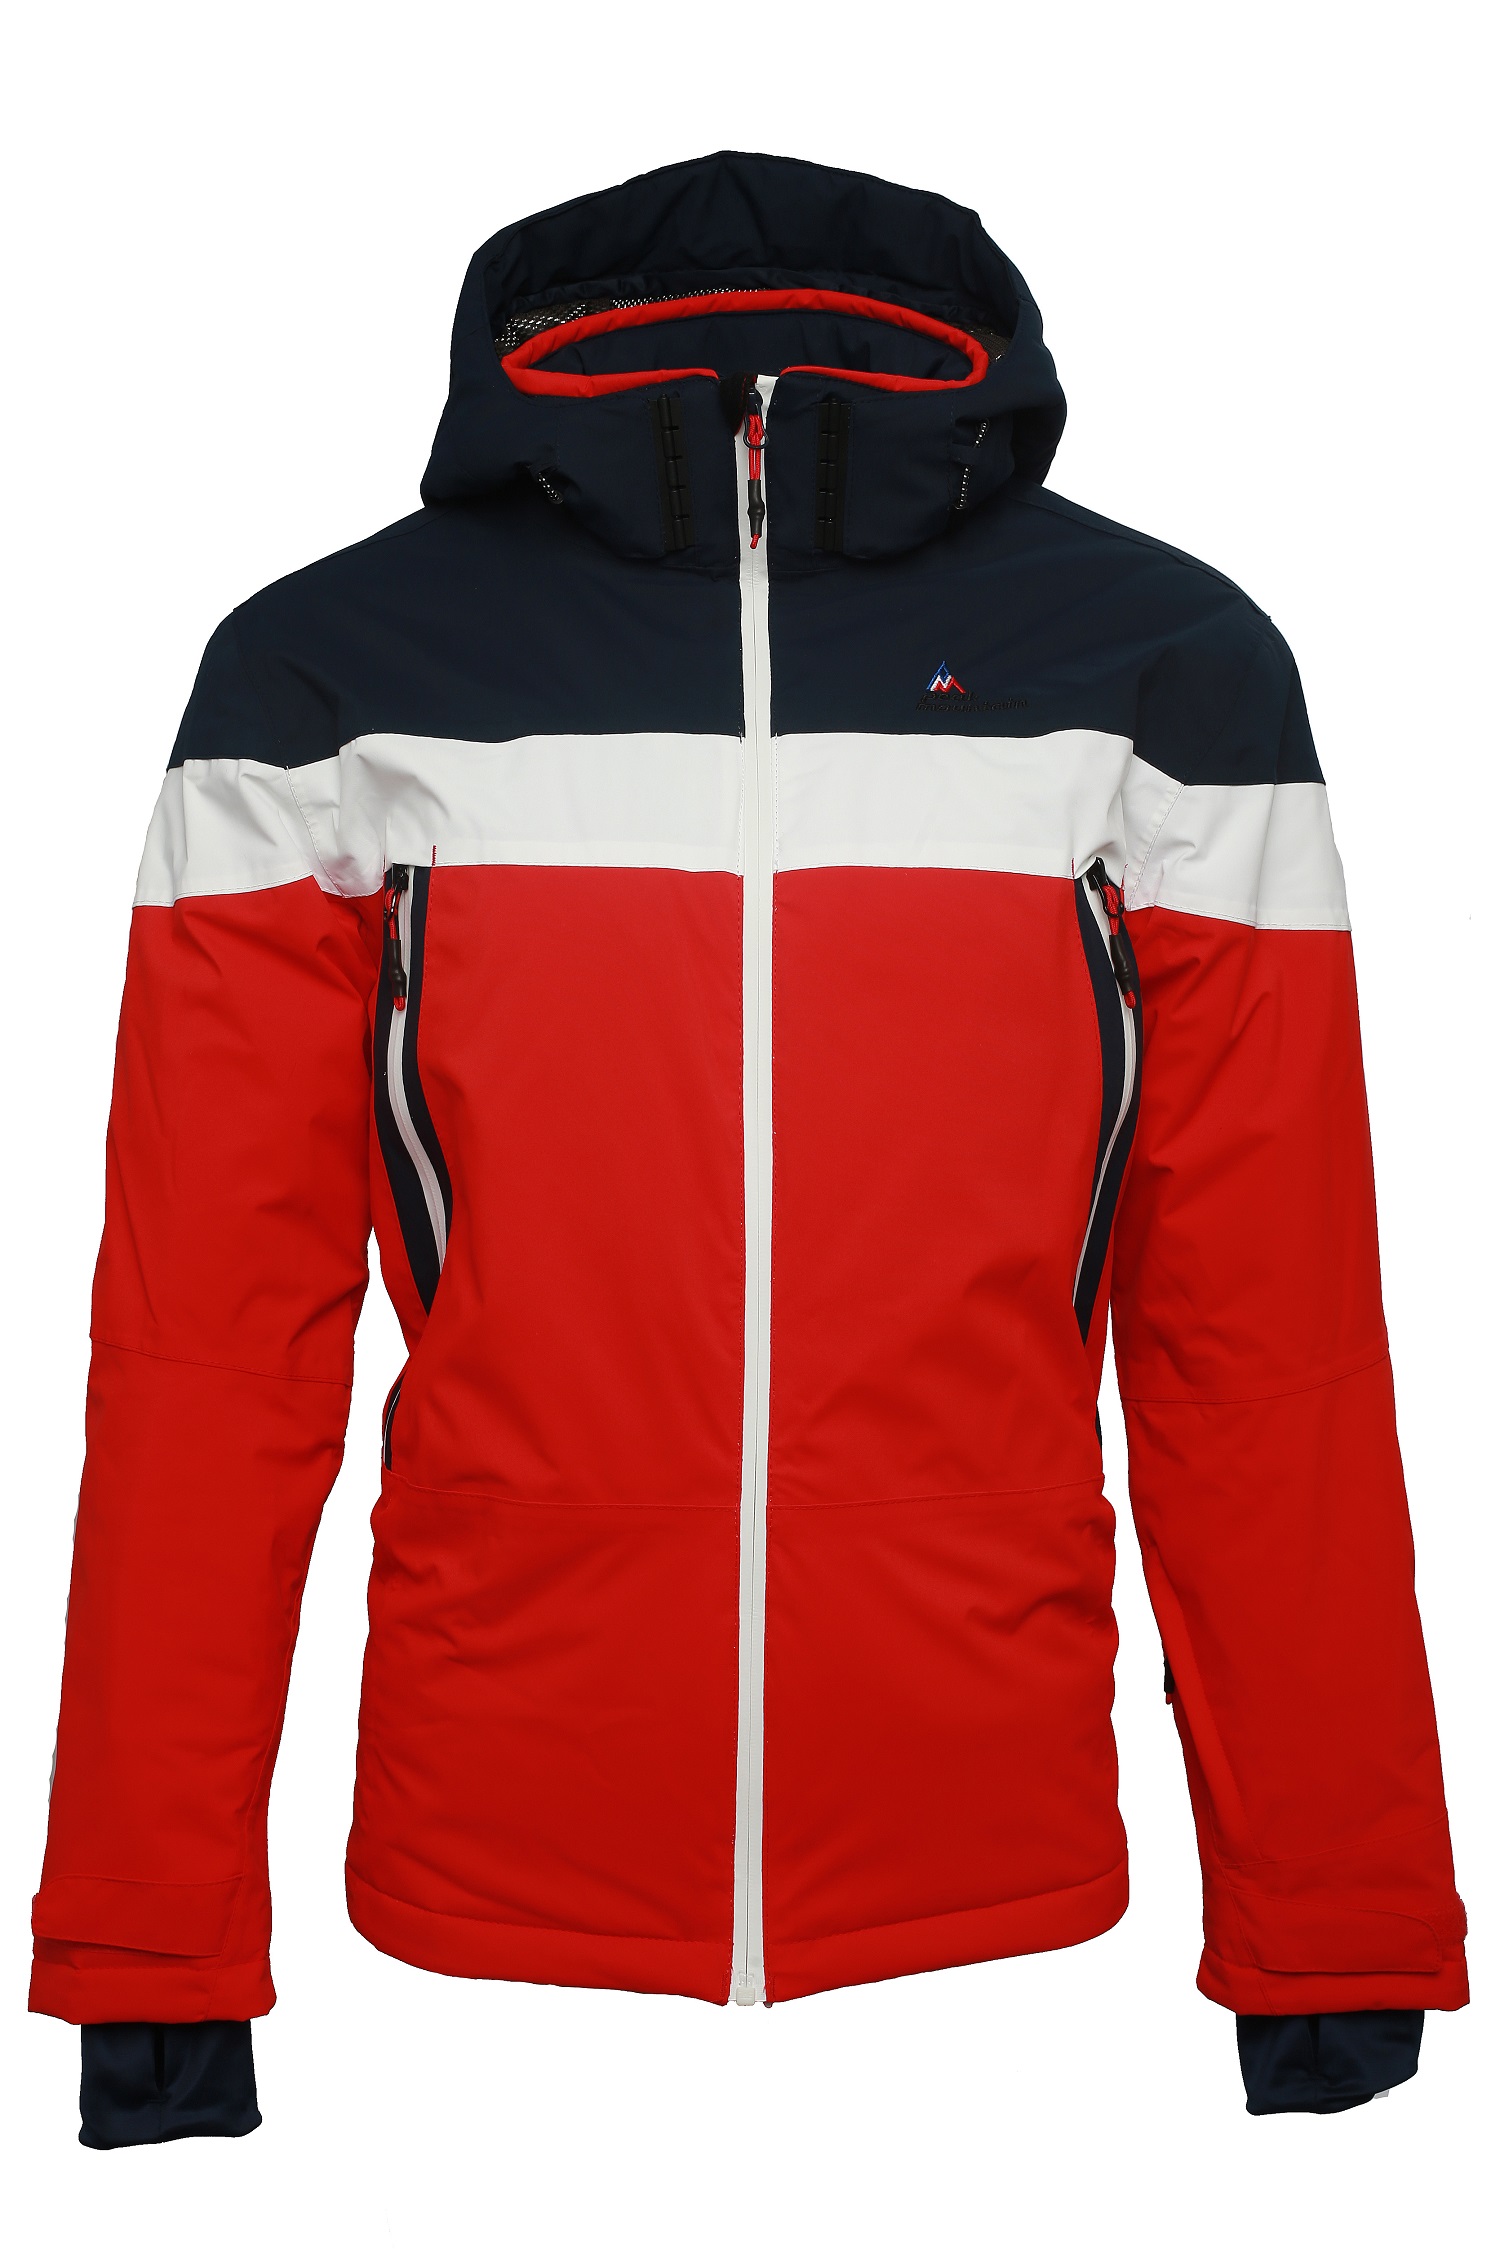 Peak Mountain Doudoune de ski homme CAIROP Rouge - Vêtements Doudounes Homme  63,20 €